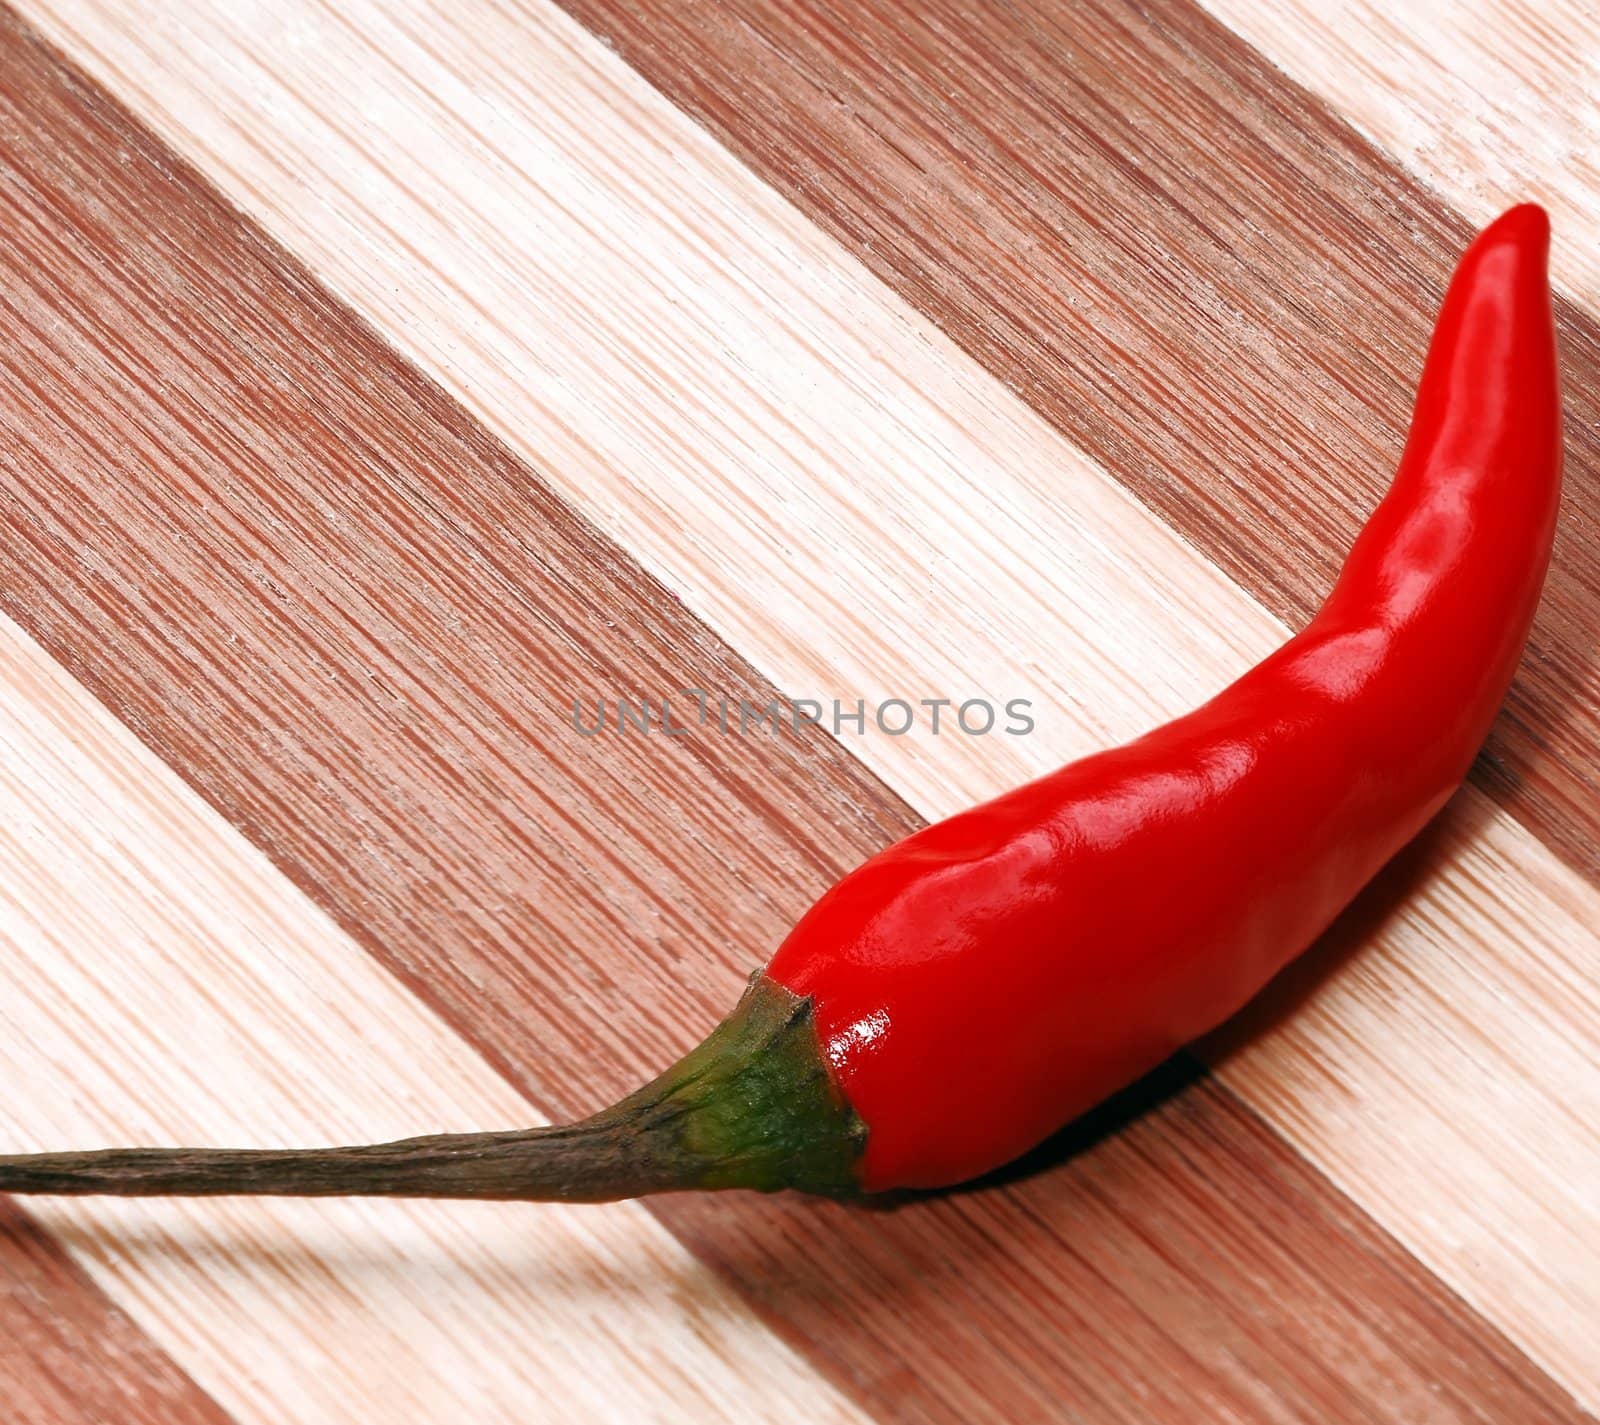 red chili pepper by keko64